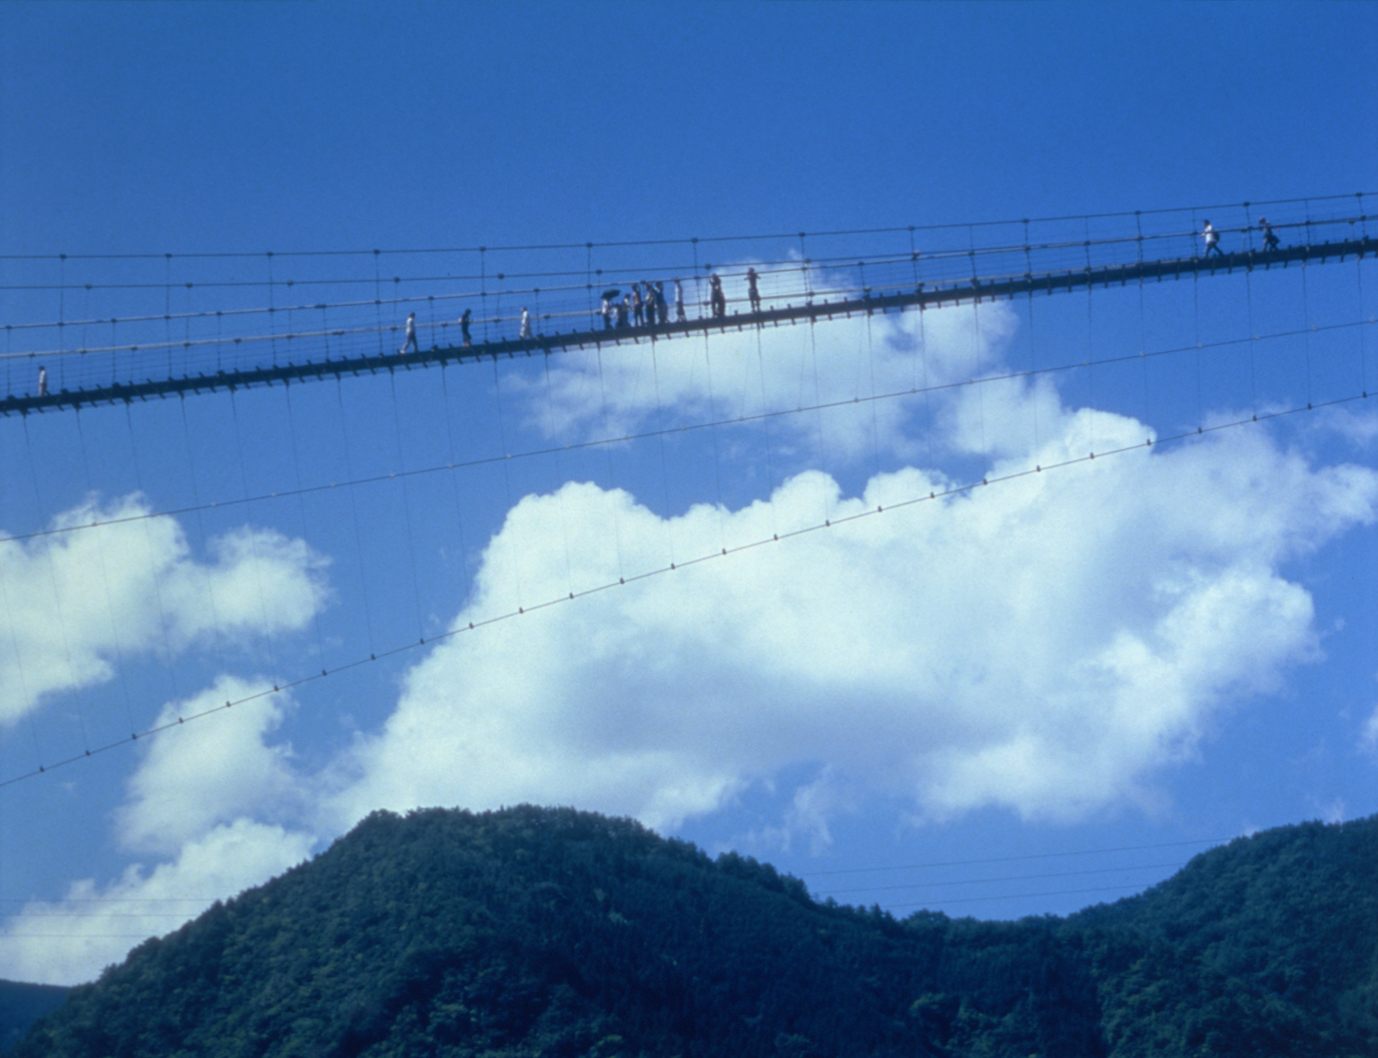 “谷濑吊桥”是与筱原地区相邻的十津川村最长的吊桥之一。